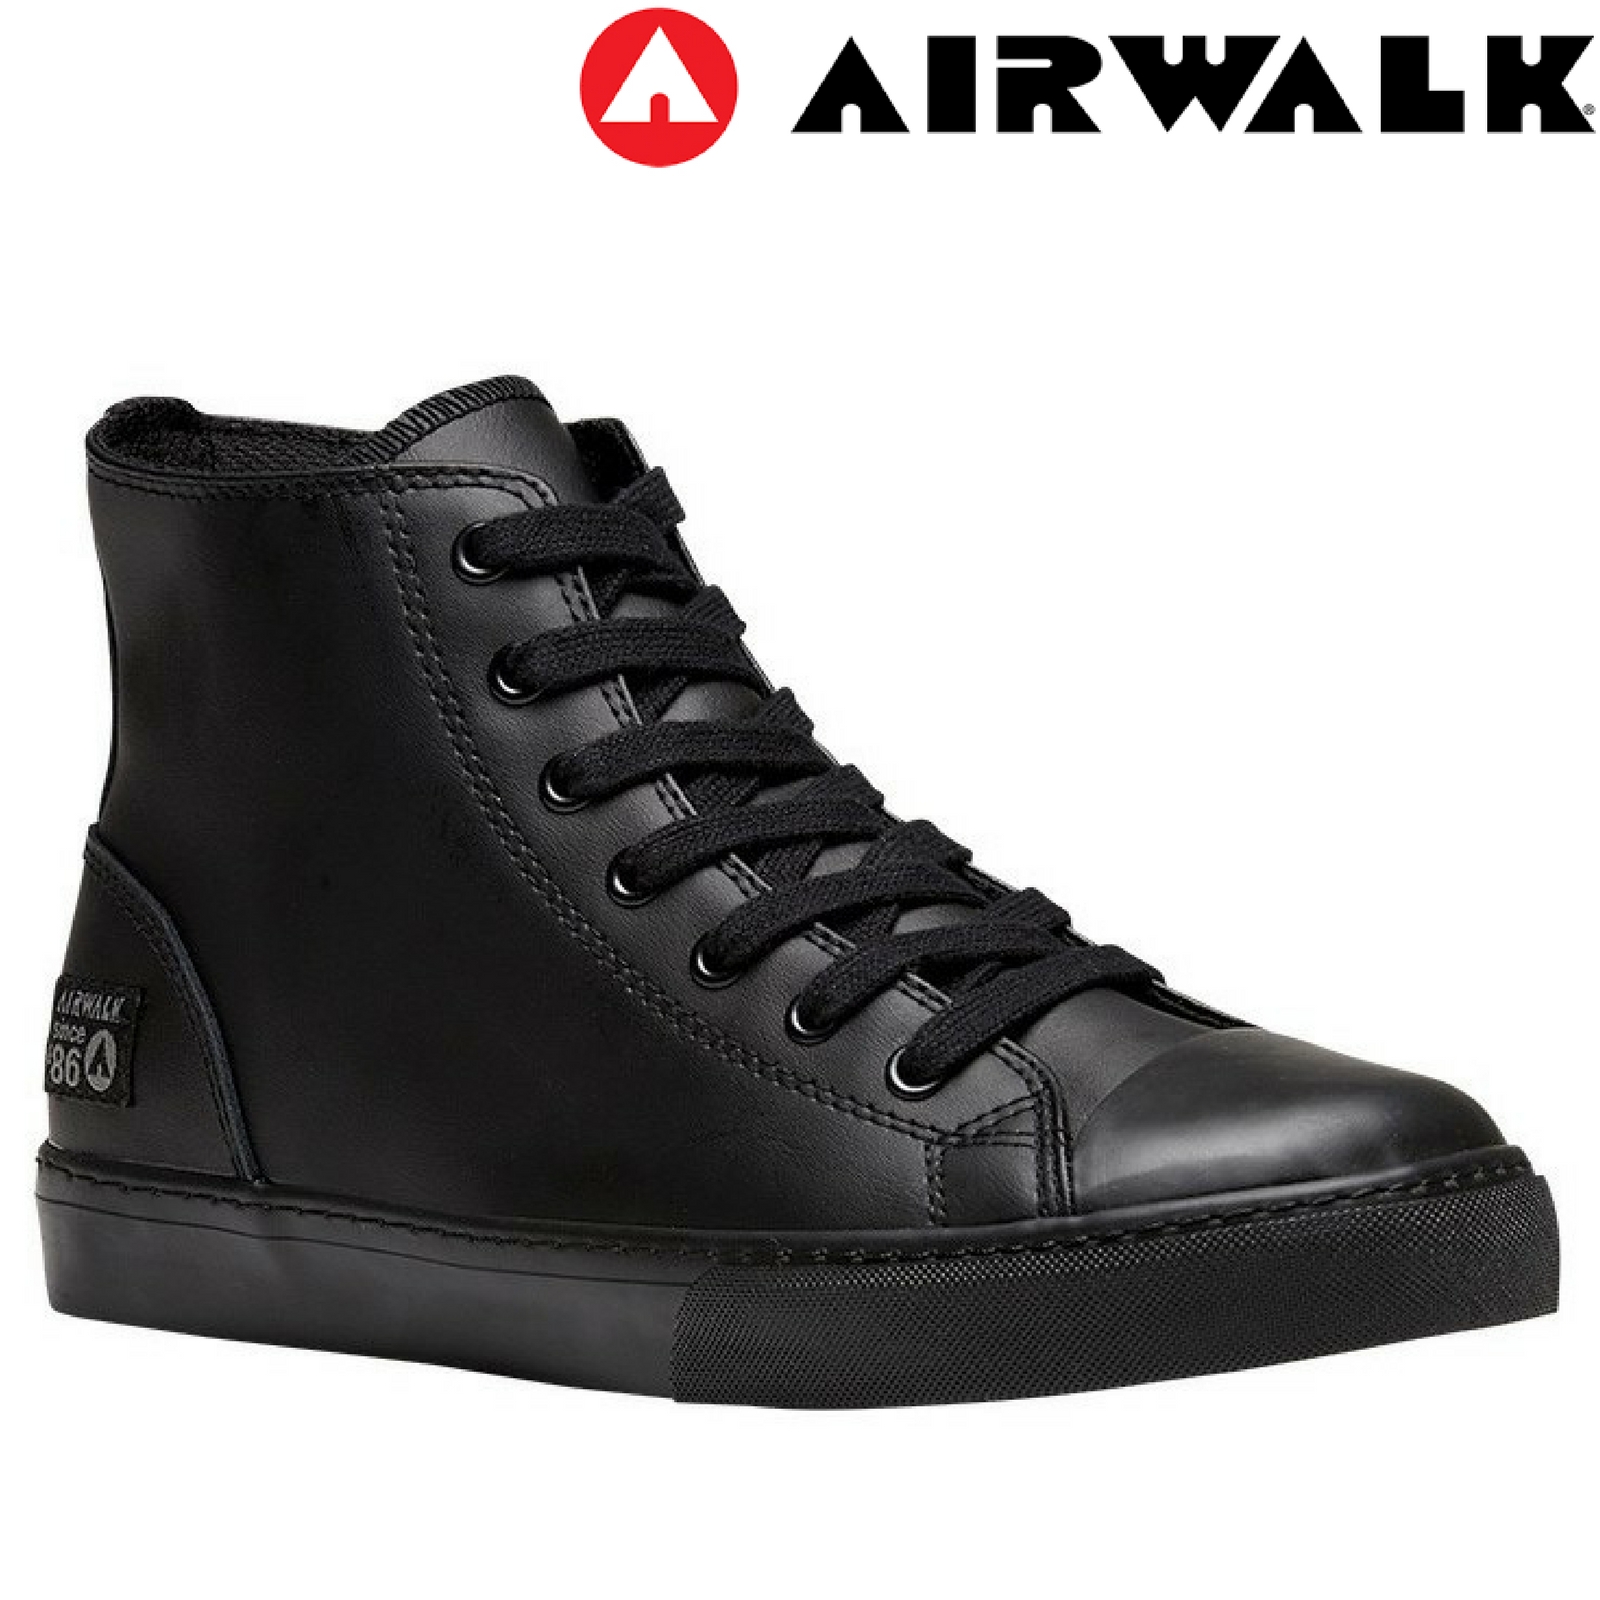 airwalk all black high